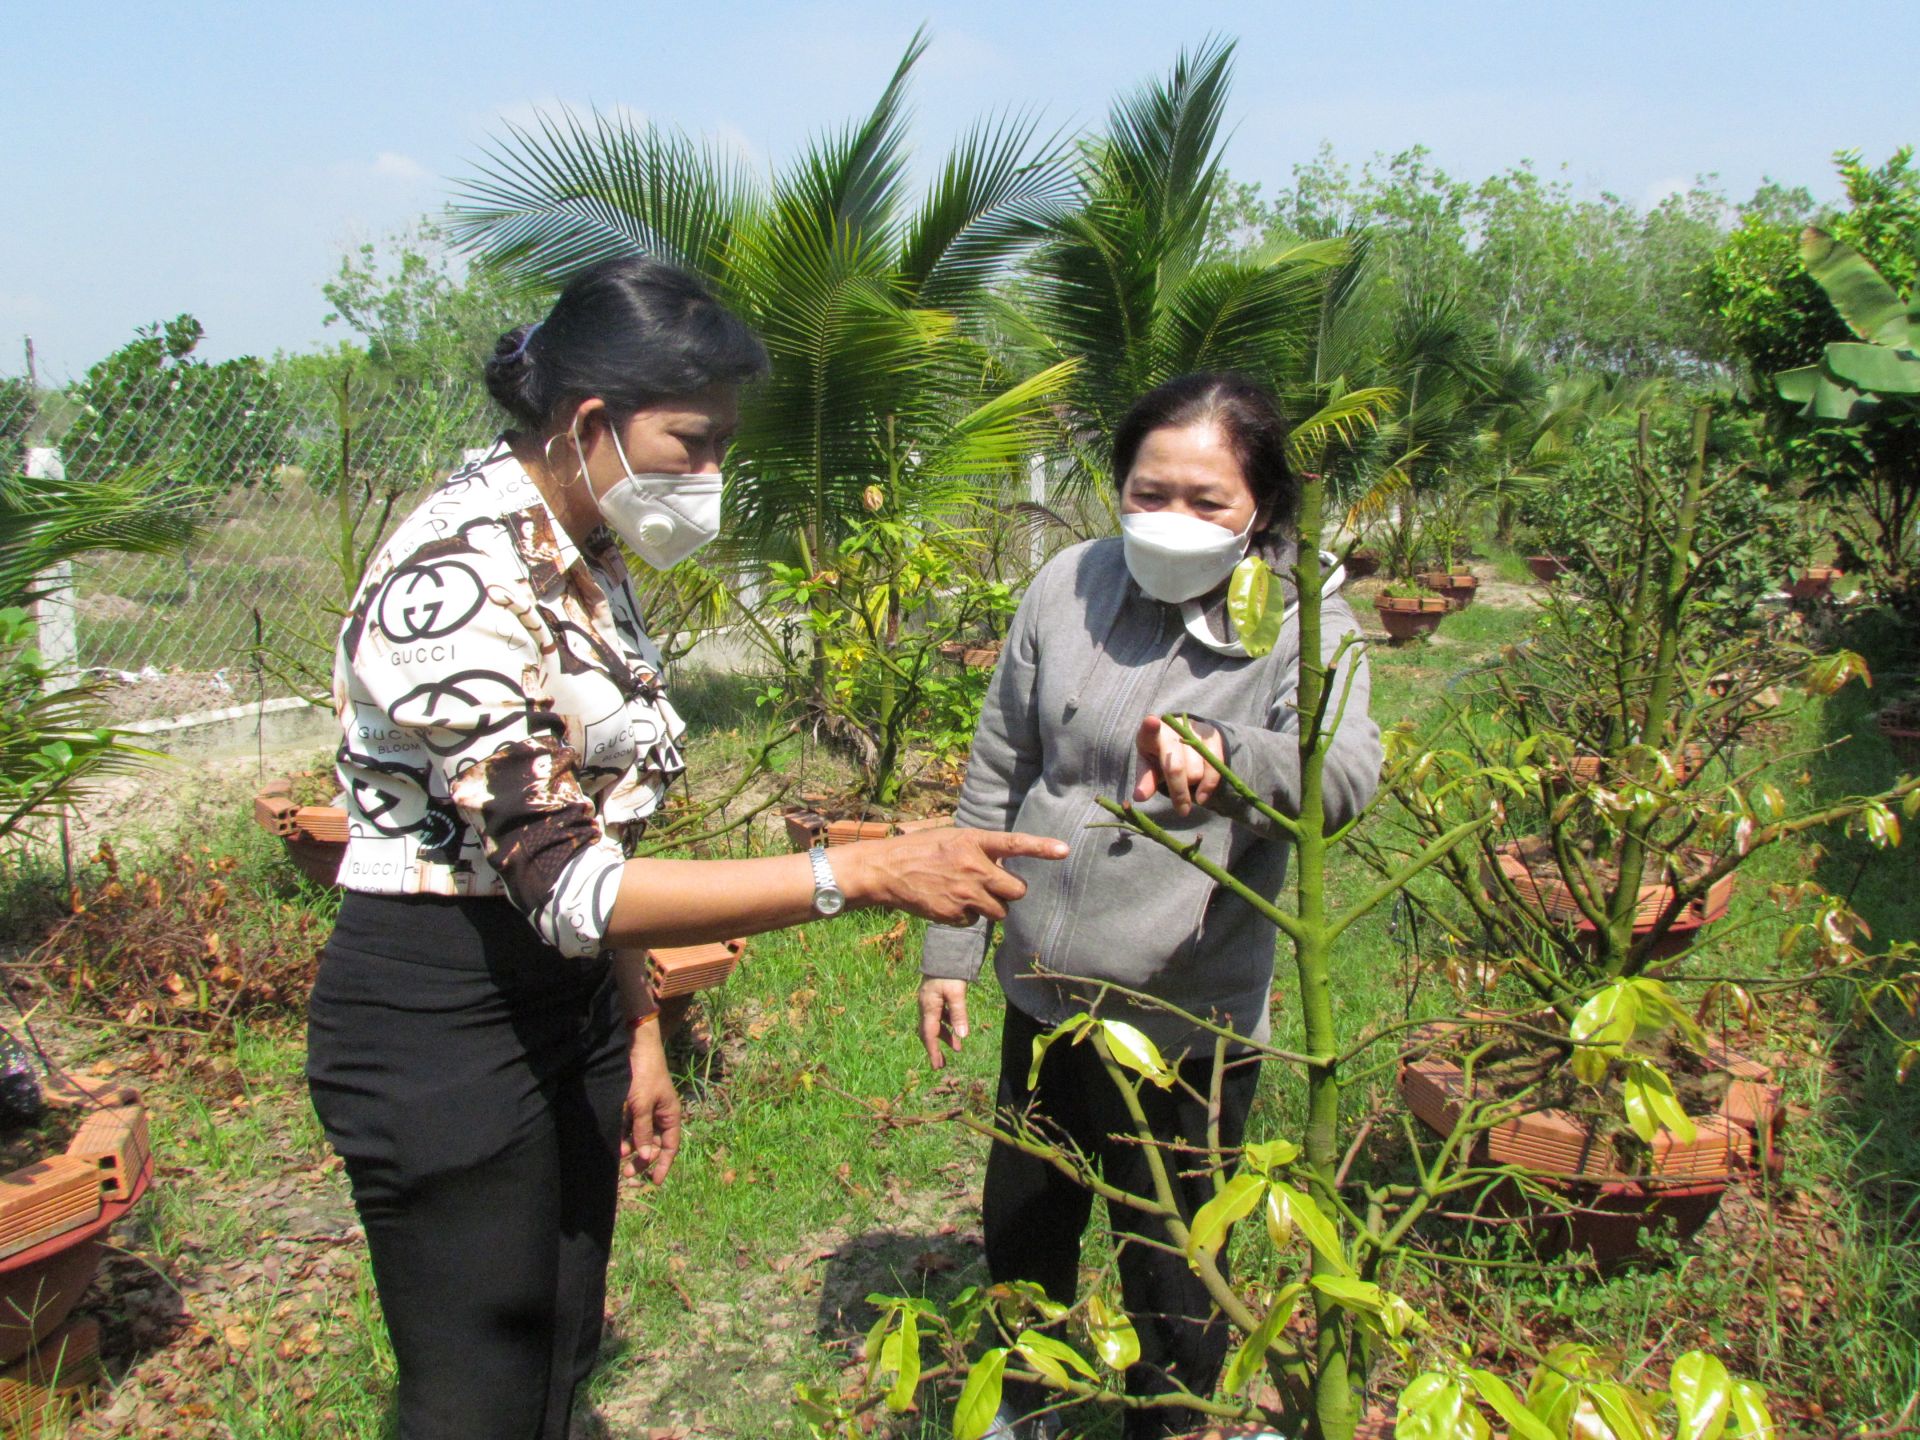 Trồng cây cảnh, có nghề trong tay, phụ nữ này ở Tây Ninh nhận chăm sóc 20 cây mai vàng, giá 1 triệu/cây - Ảnh 1.